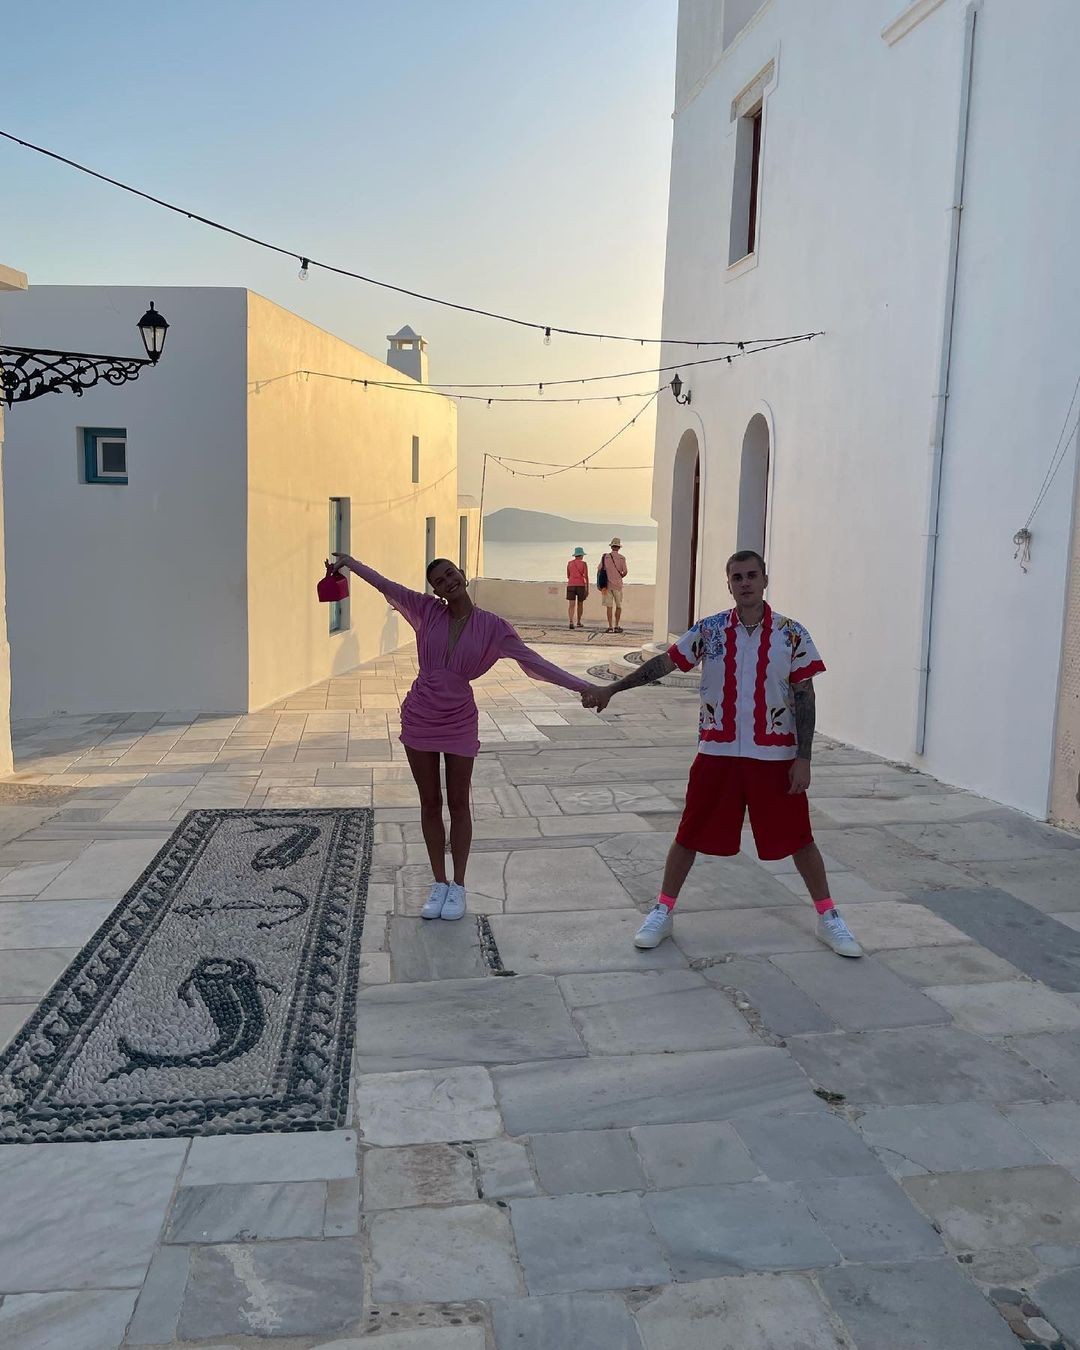 Justin e Hailey Bieber compartilham momentos românticos em viagem à ilha grega (Foto: Reprodução/Instagram)